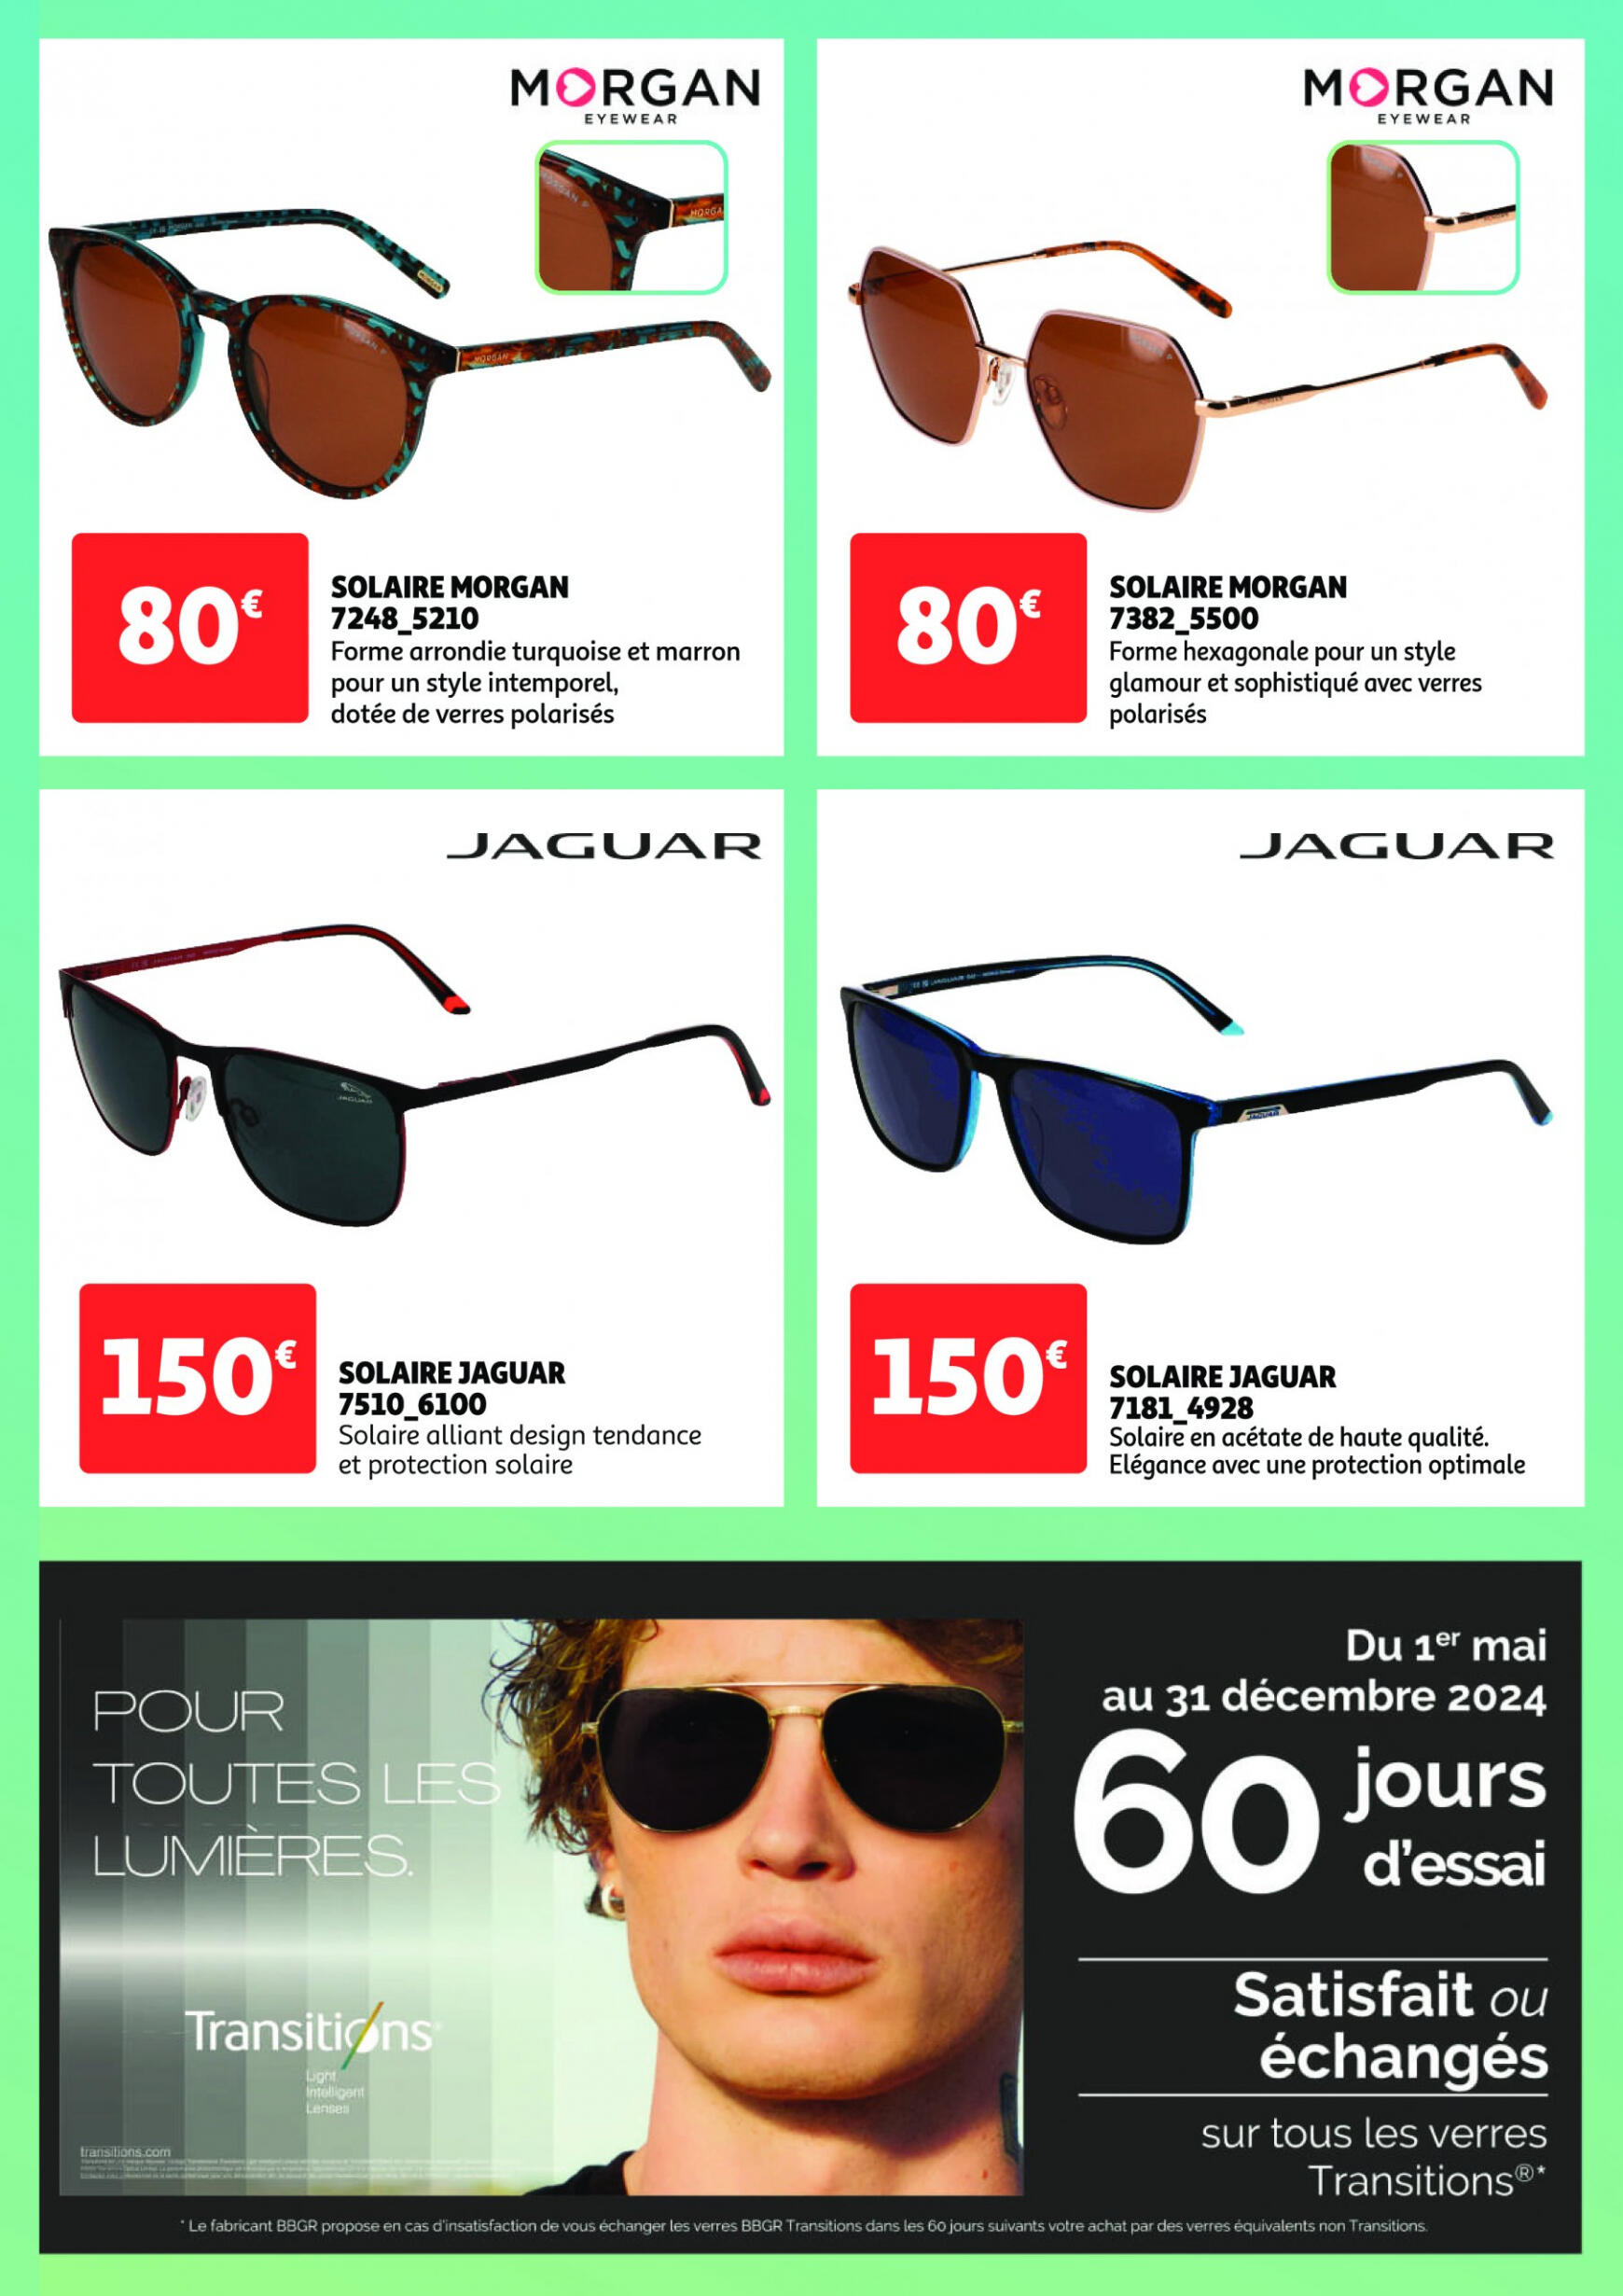 auchan - Prospectus Auchan - Optique actuel 02.05. - 29.06. - page: 3